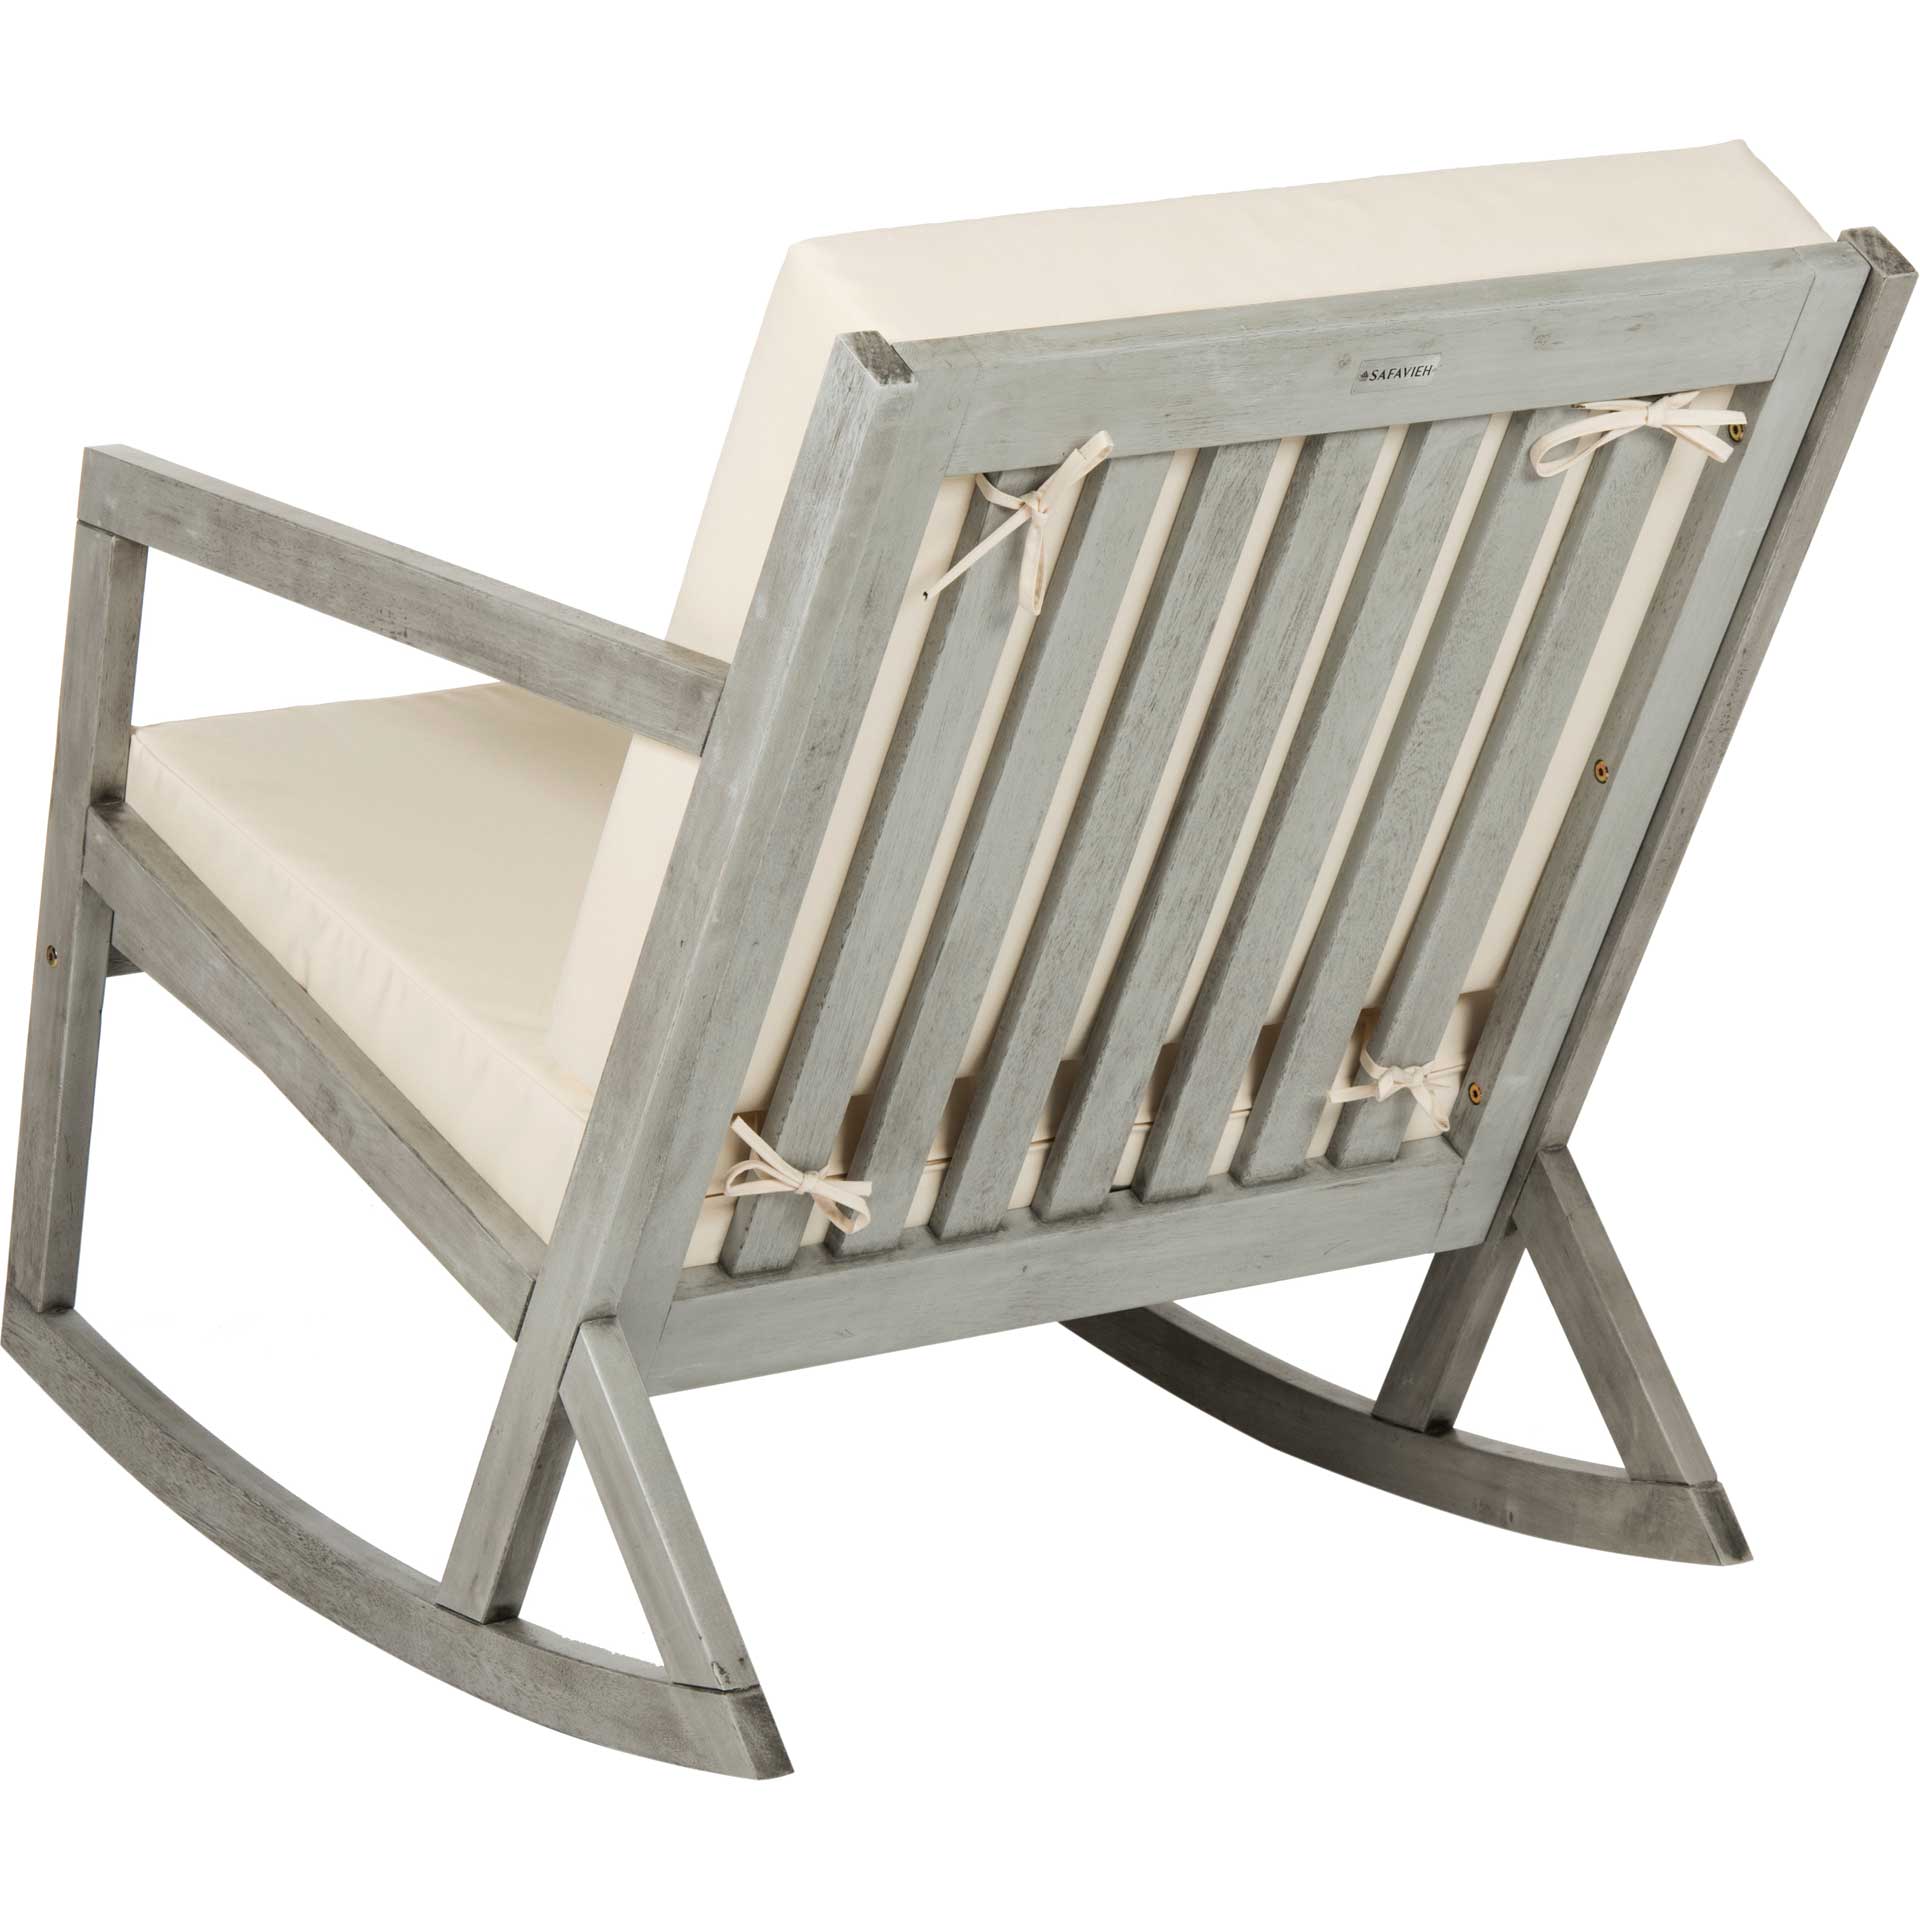 Venus Rocking Chair Gray/Beige